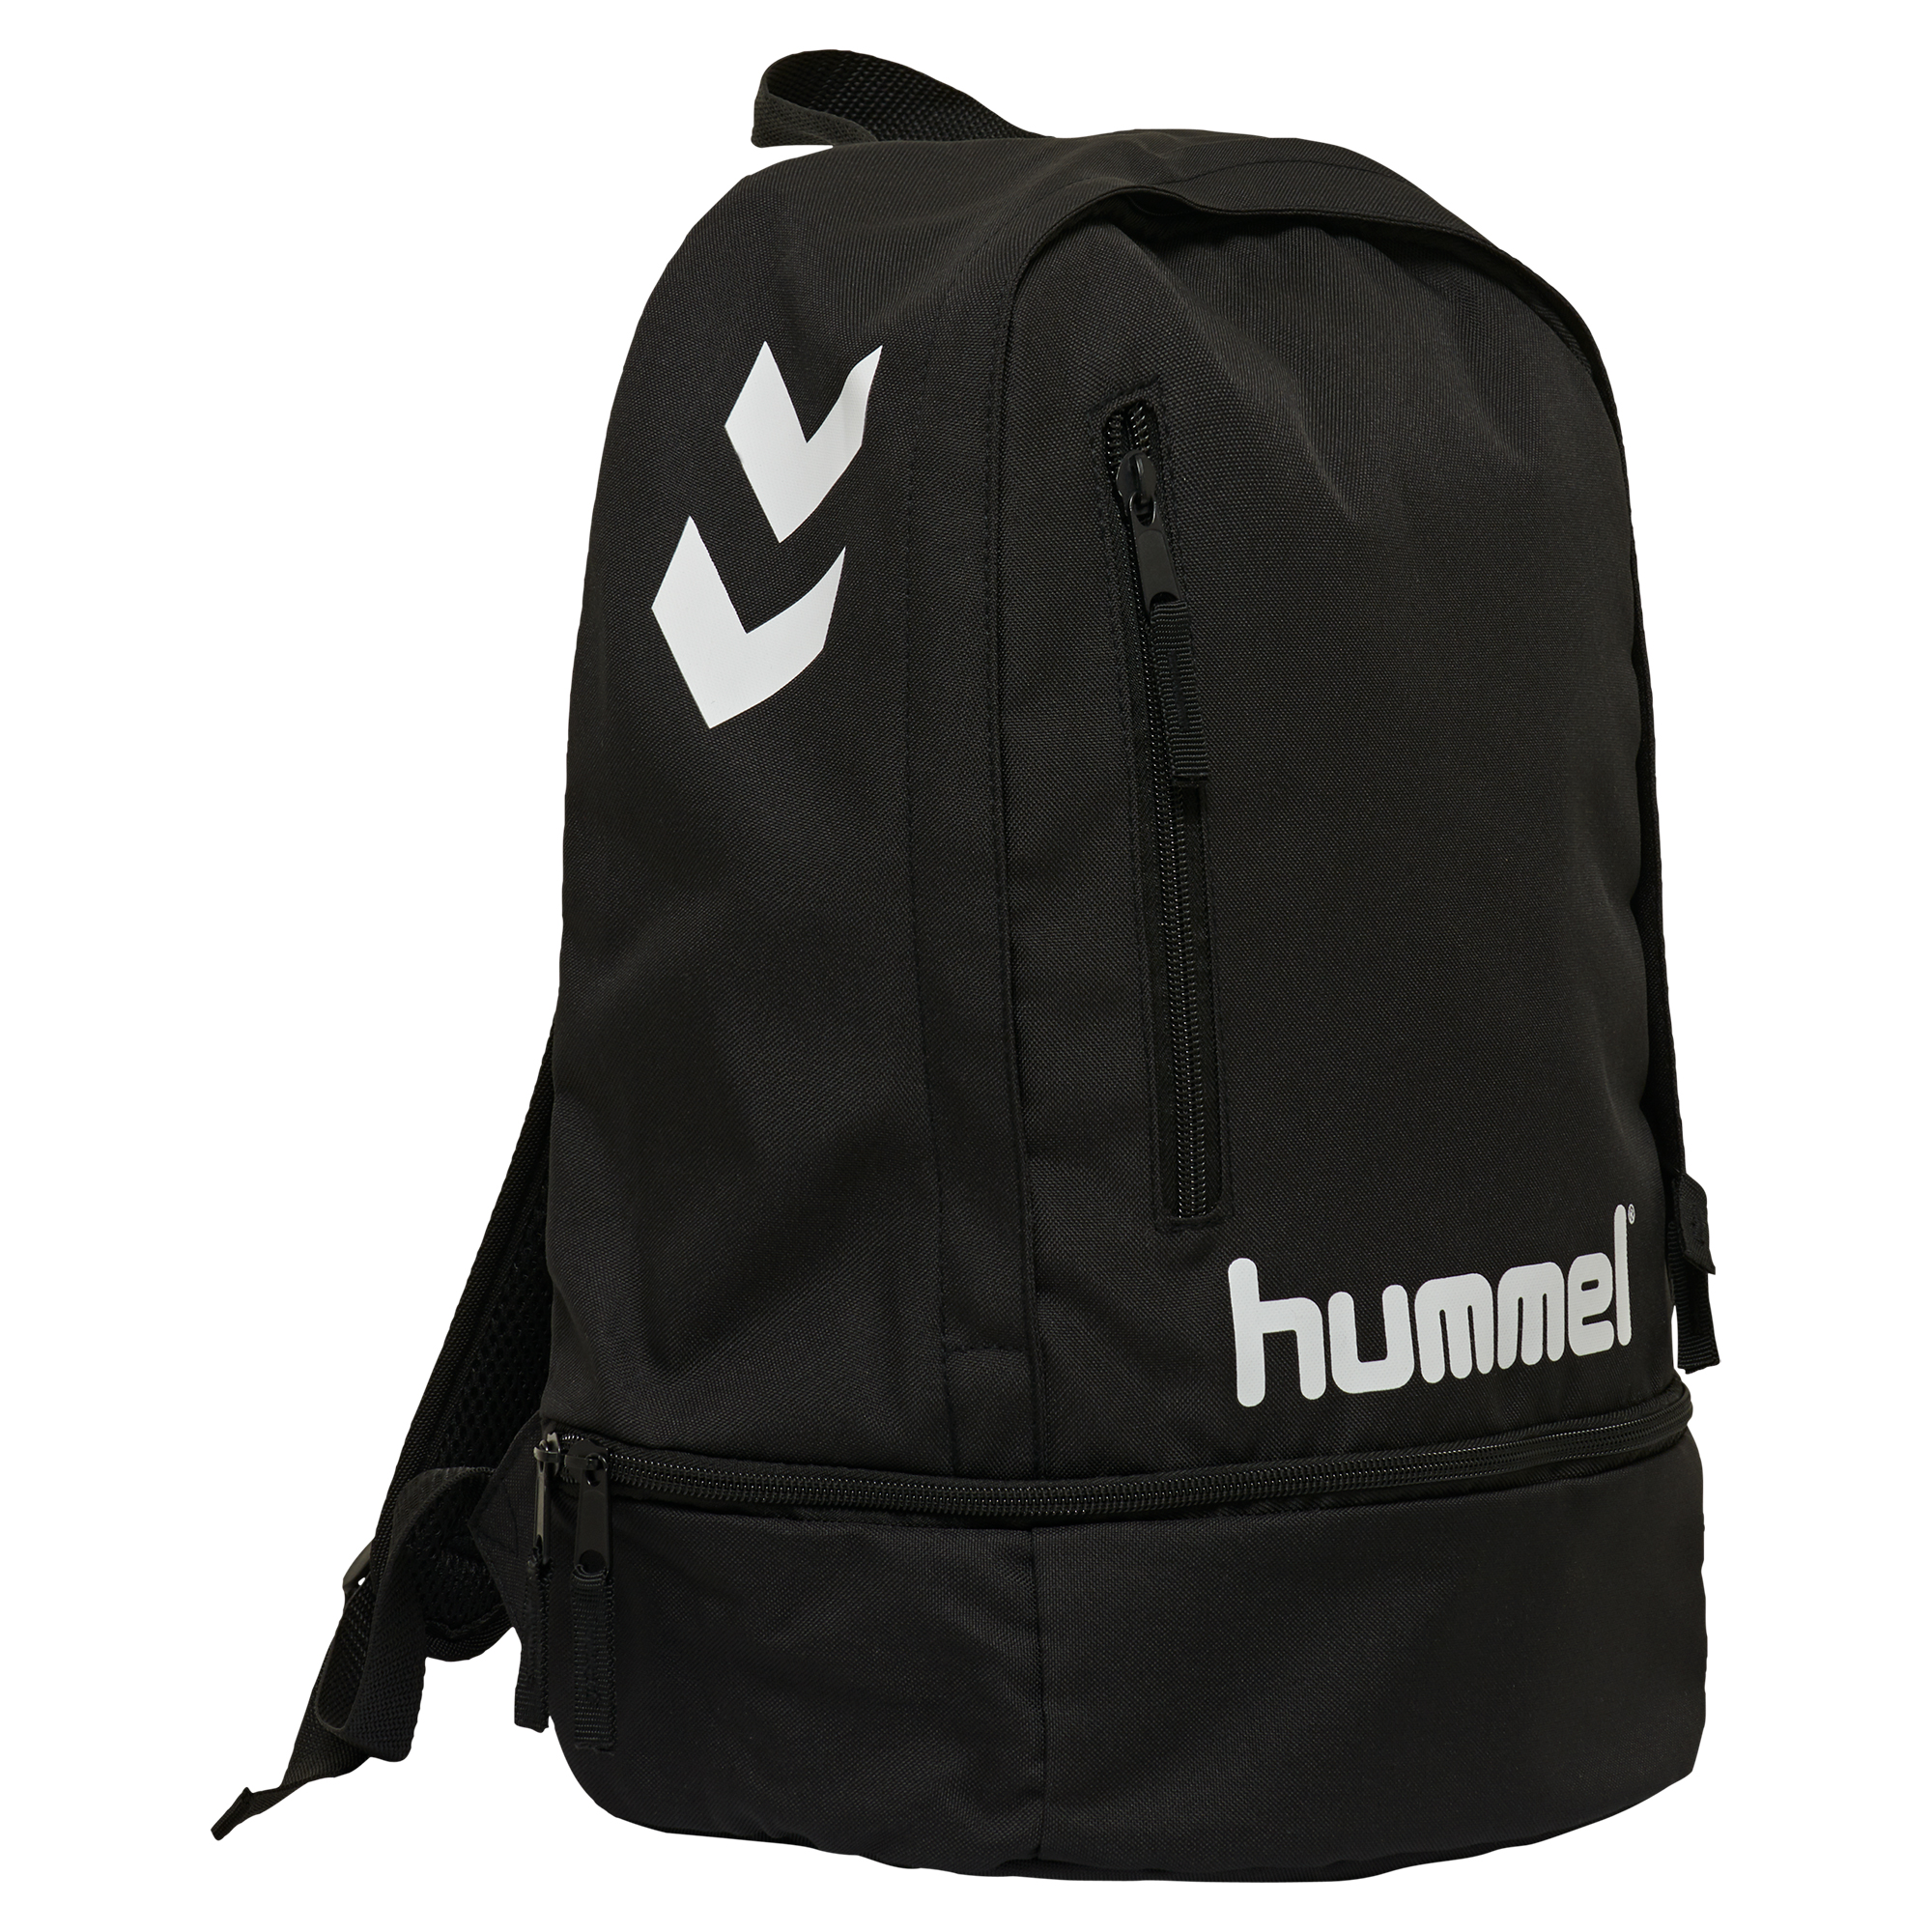 Hummel Promo Back Pack